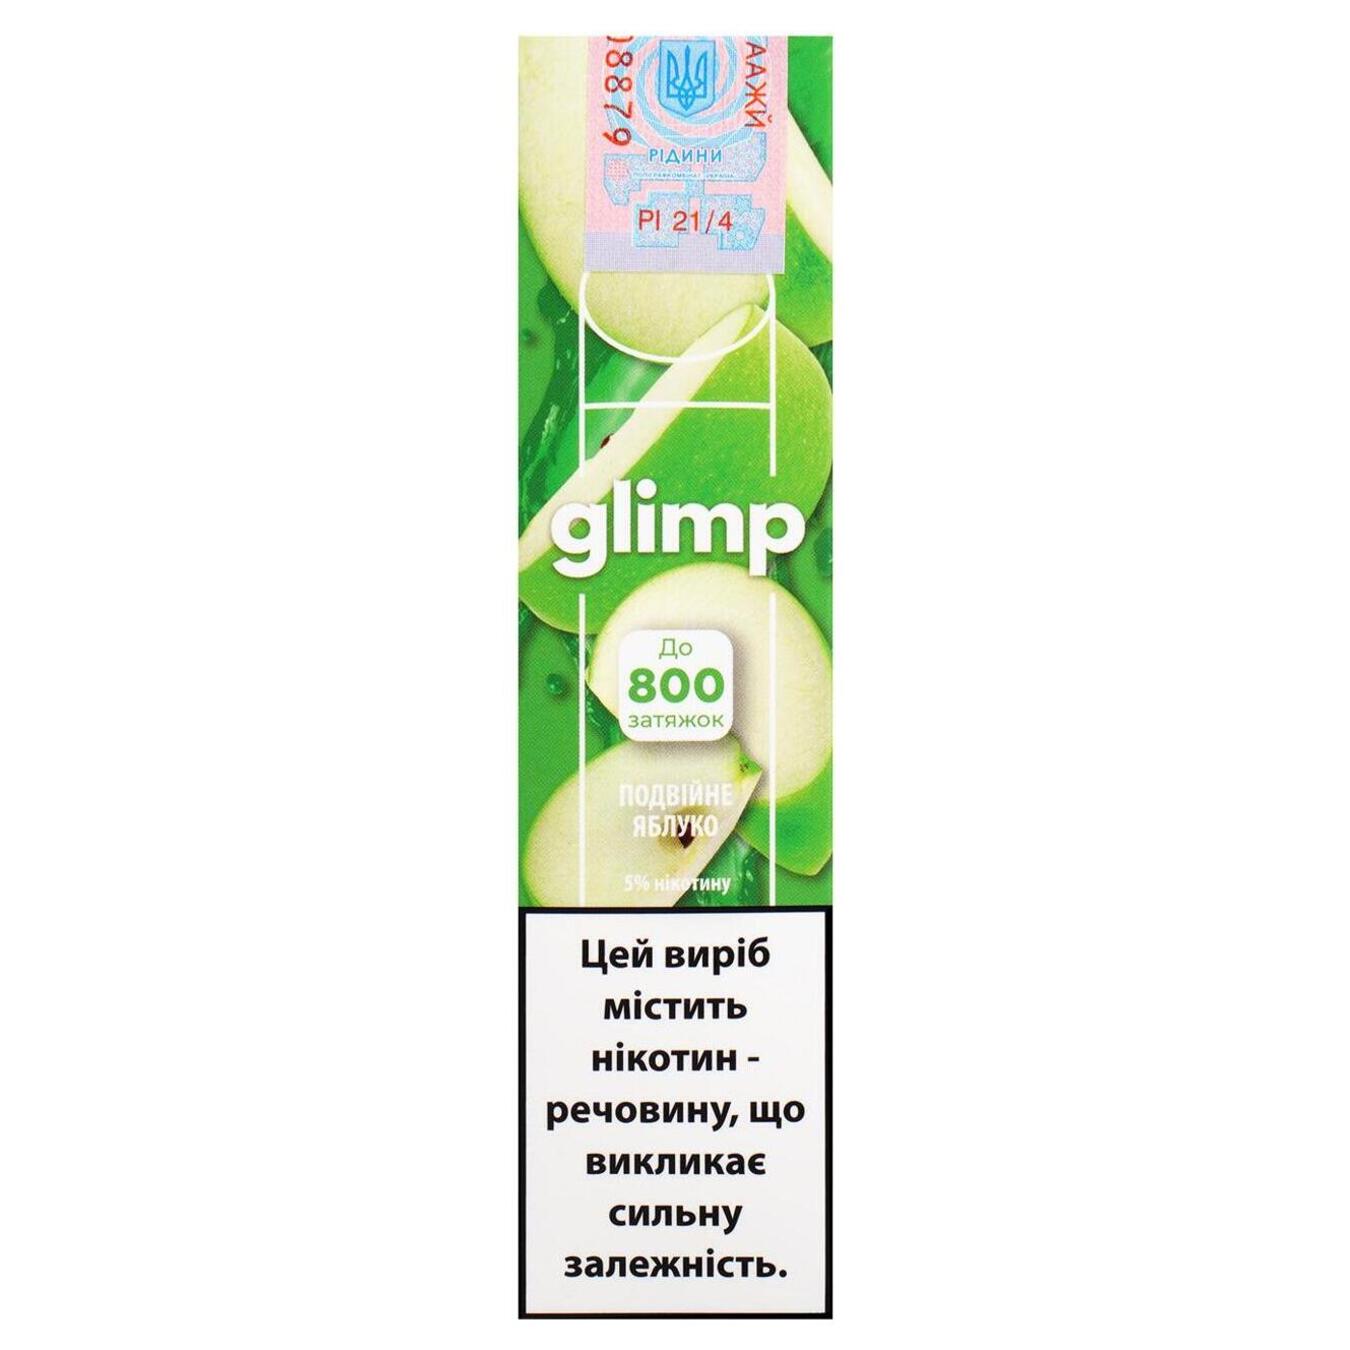 Испаритель со вкусом яблока GLIMP 800 5% 2мл (цена указана без акциза)